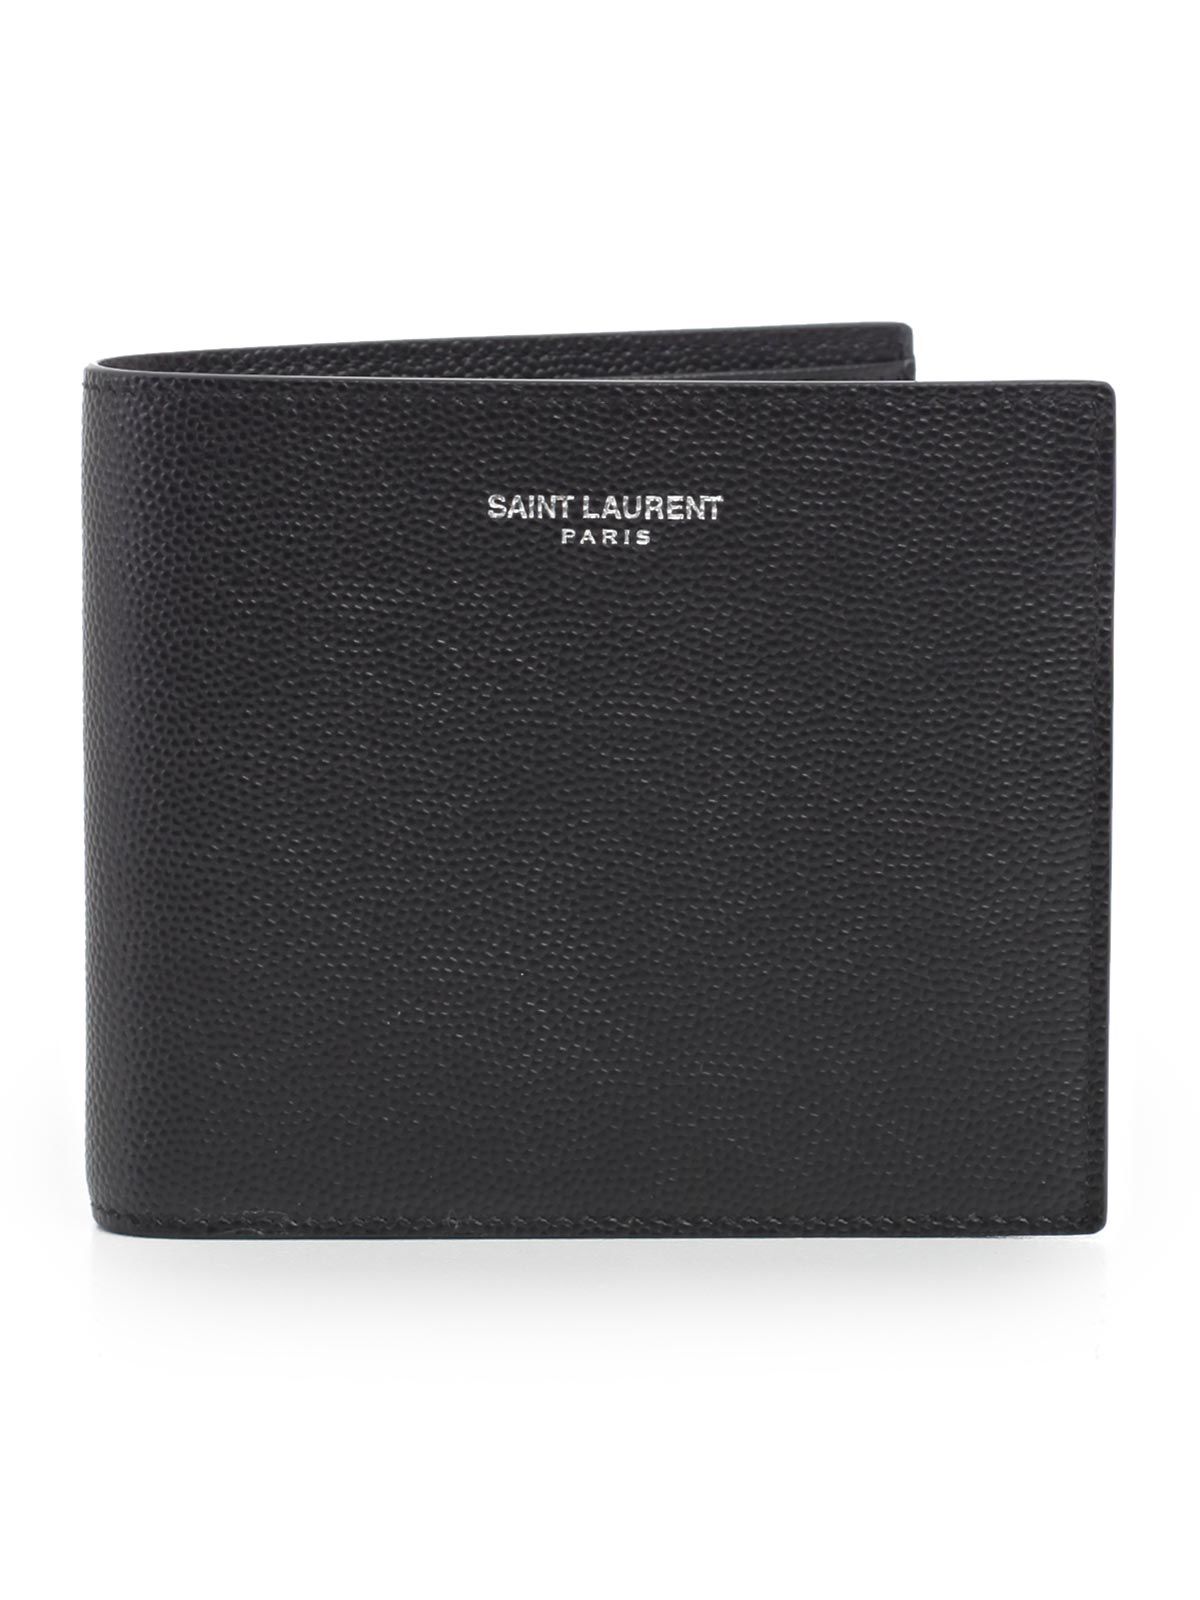 Saint Laurent - Saint Laurent Wallet - Black, Men's Wallets | Italist